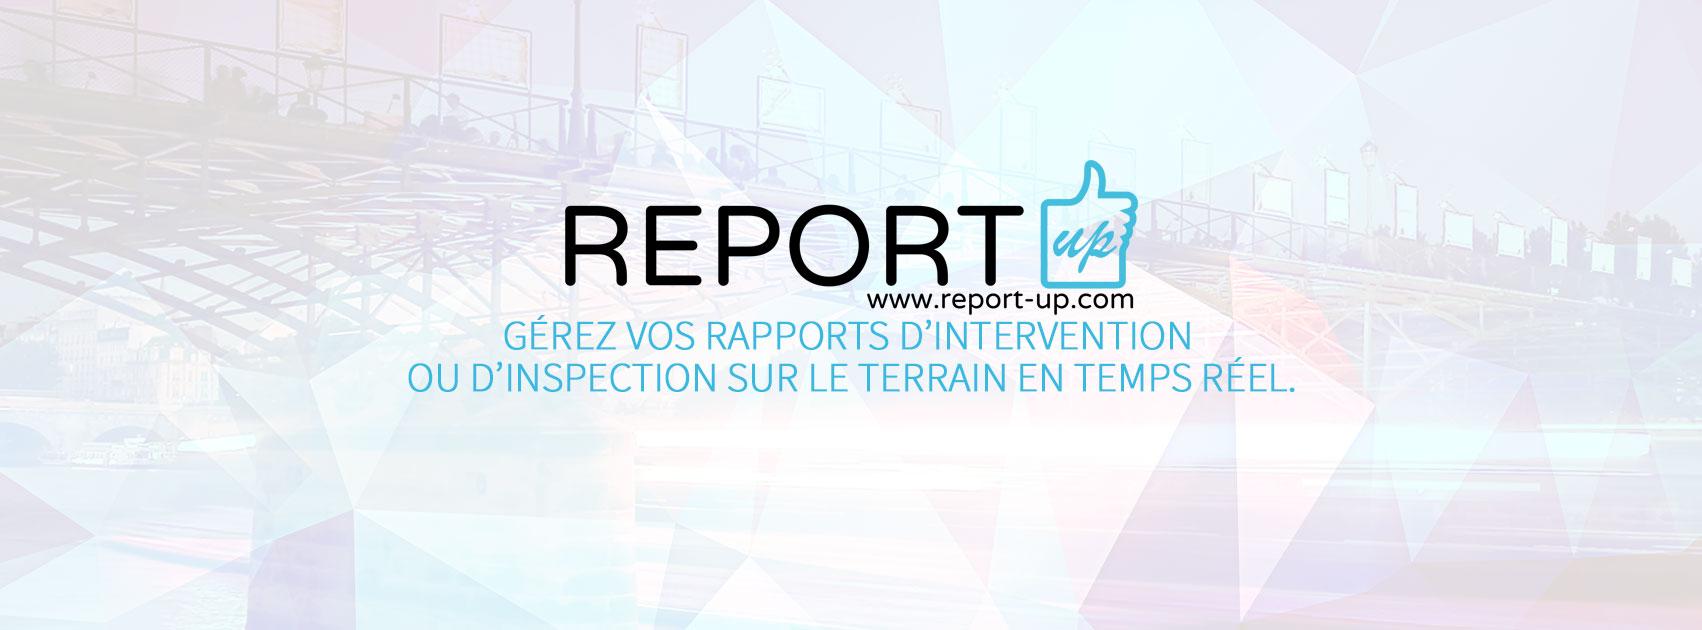 Avis Report-Up : GÉREZ VOS RAPPORTS SUR LE TERRAIN EN TEMPS RÉEL - Appvizer